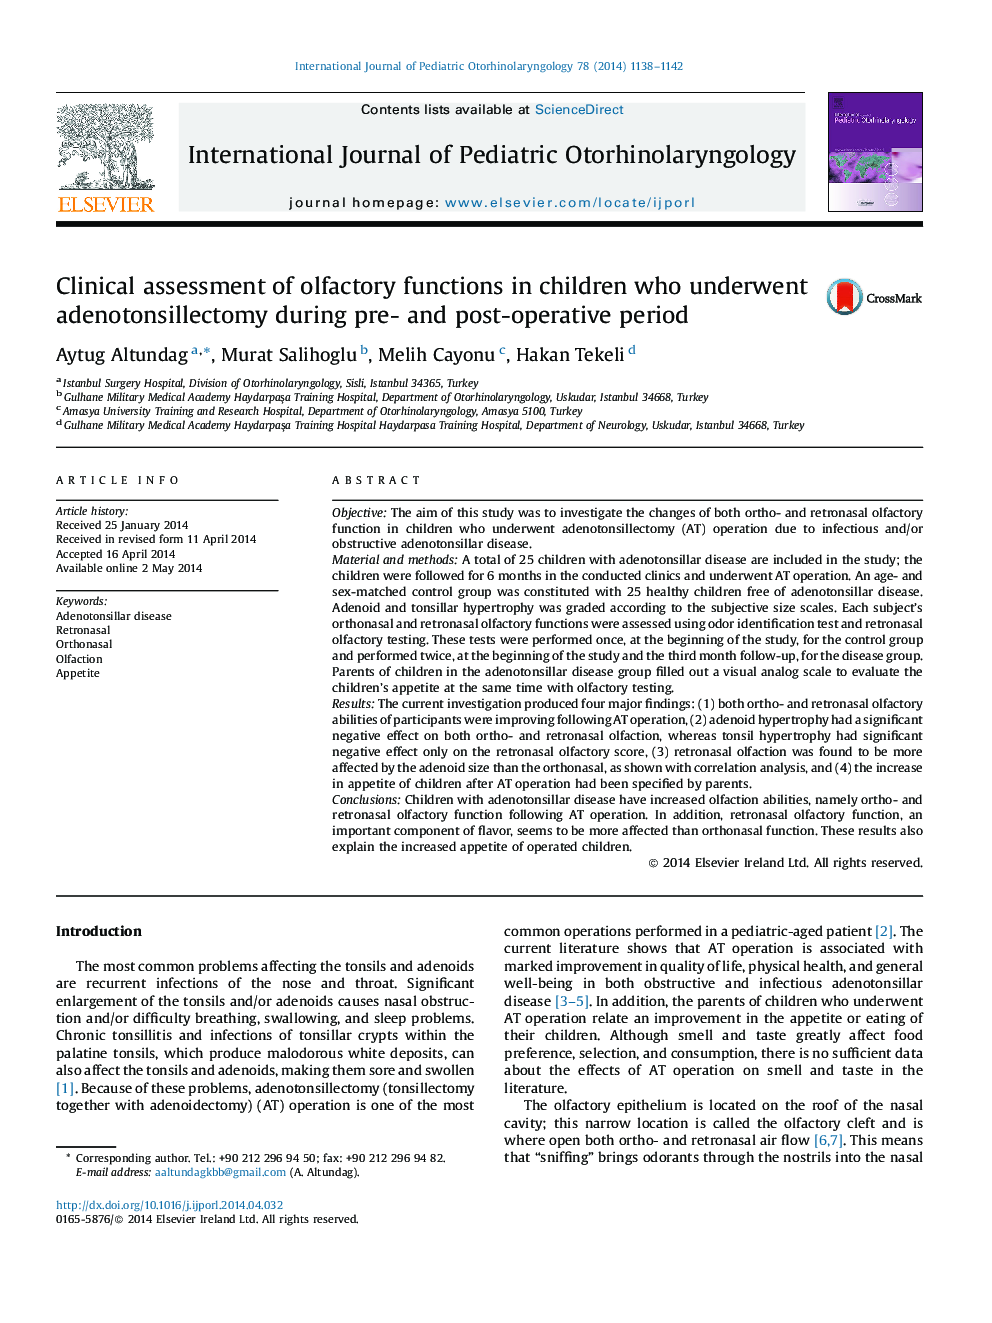 ارزیابی بالینی عملکرد توأم بویایی در کودکان مبتلا به آدنوتونسیلکتومی در طی دوره قبل و بعد از عمل 